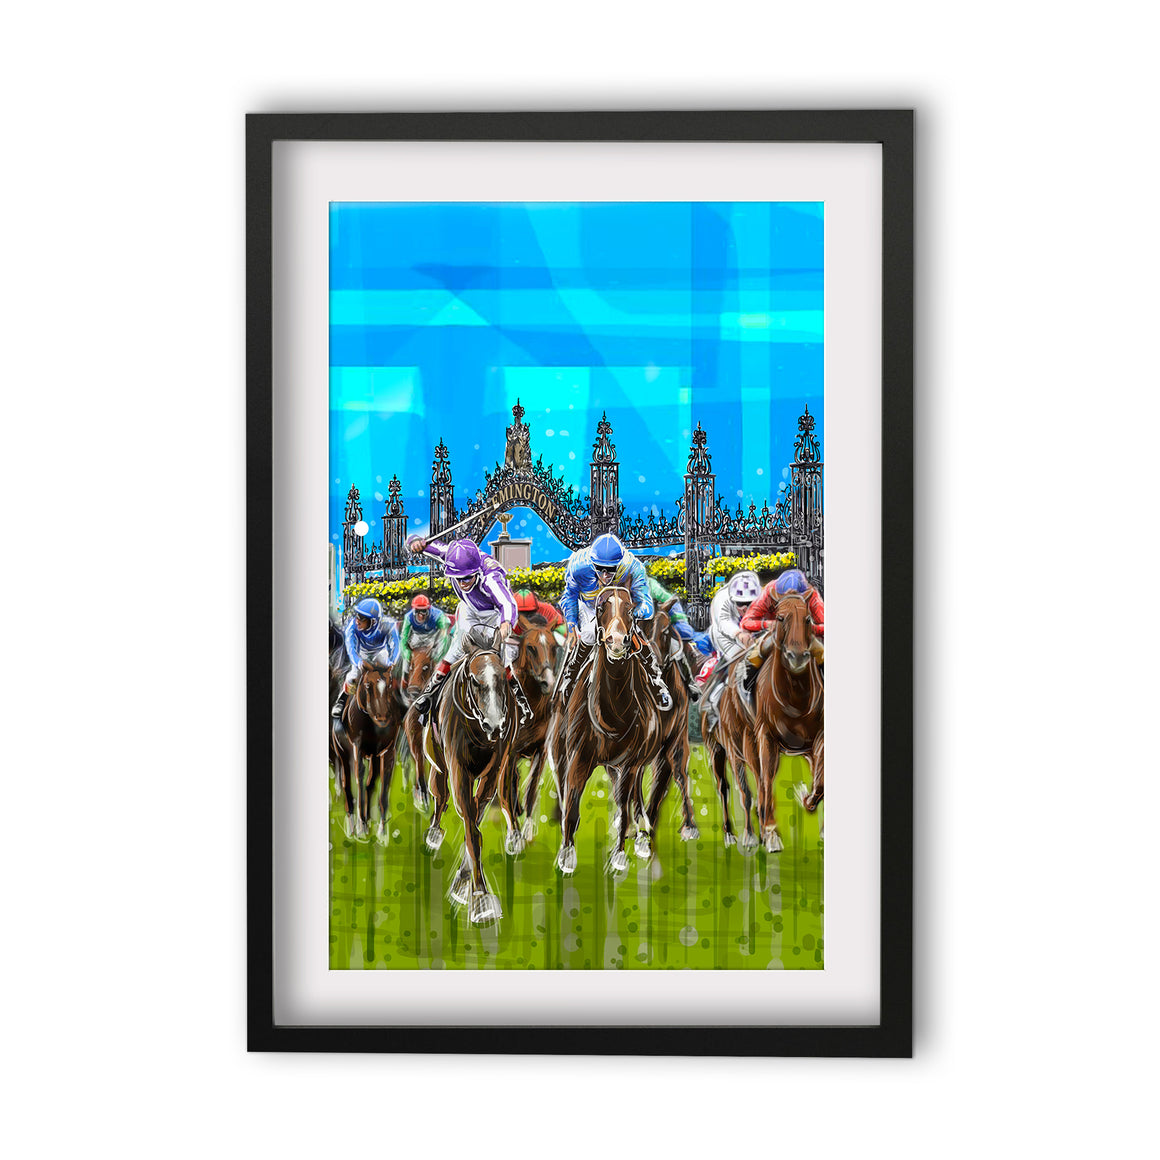 Print (Iconic) - Melbourne Flemington Horse Race (Portrait)